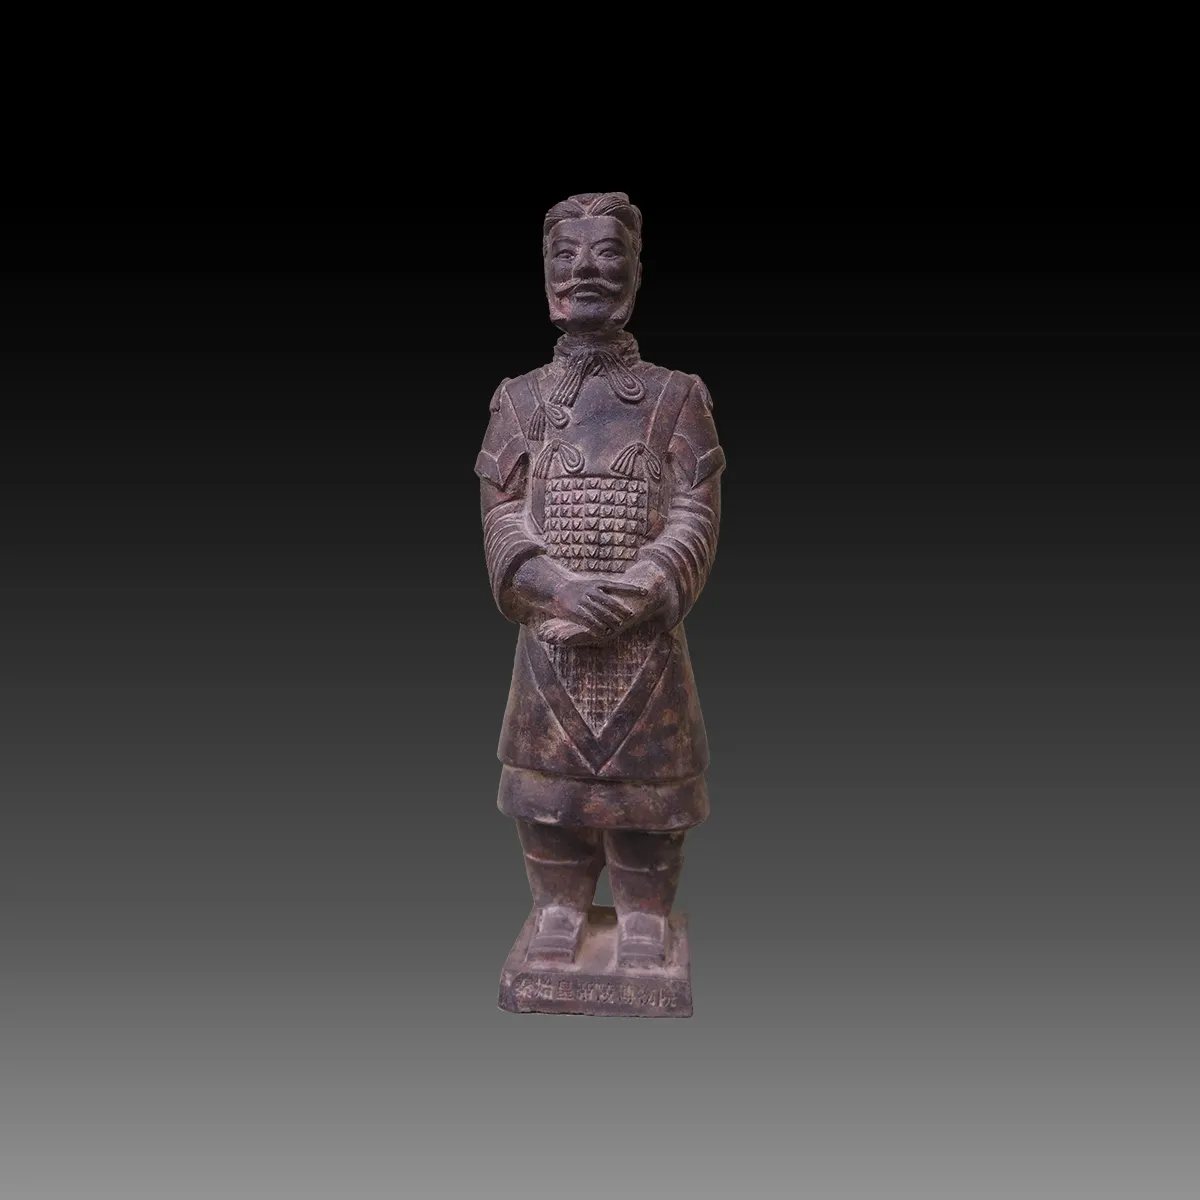 Figuritas de Guerrero de Terracota de China, caja de embalaje de regalo, figurita coleccionable para decoración del hogar